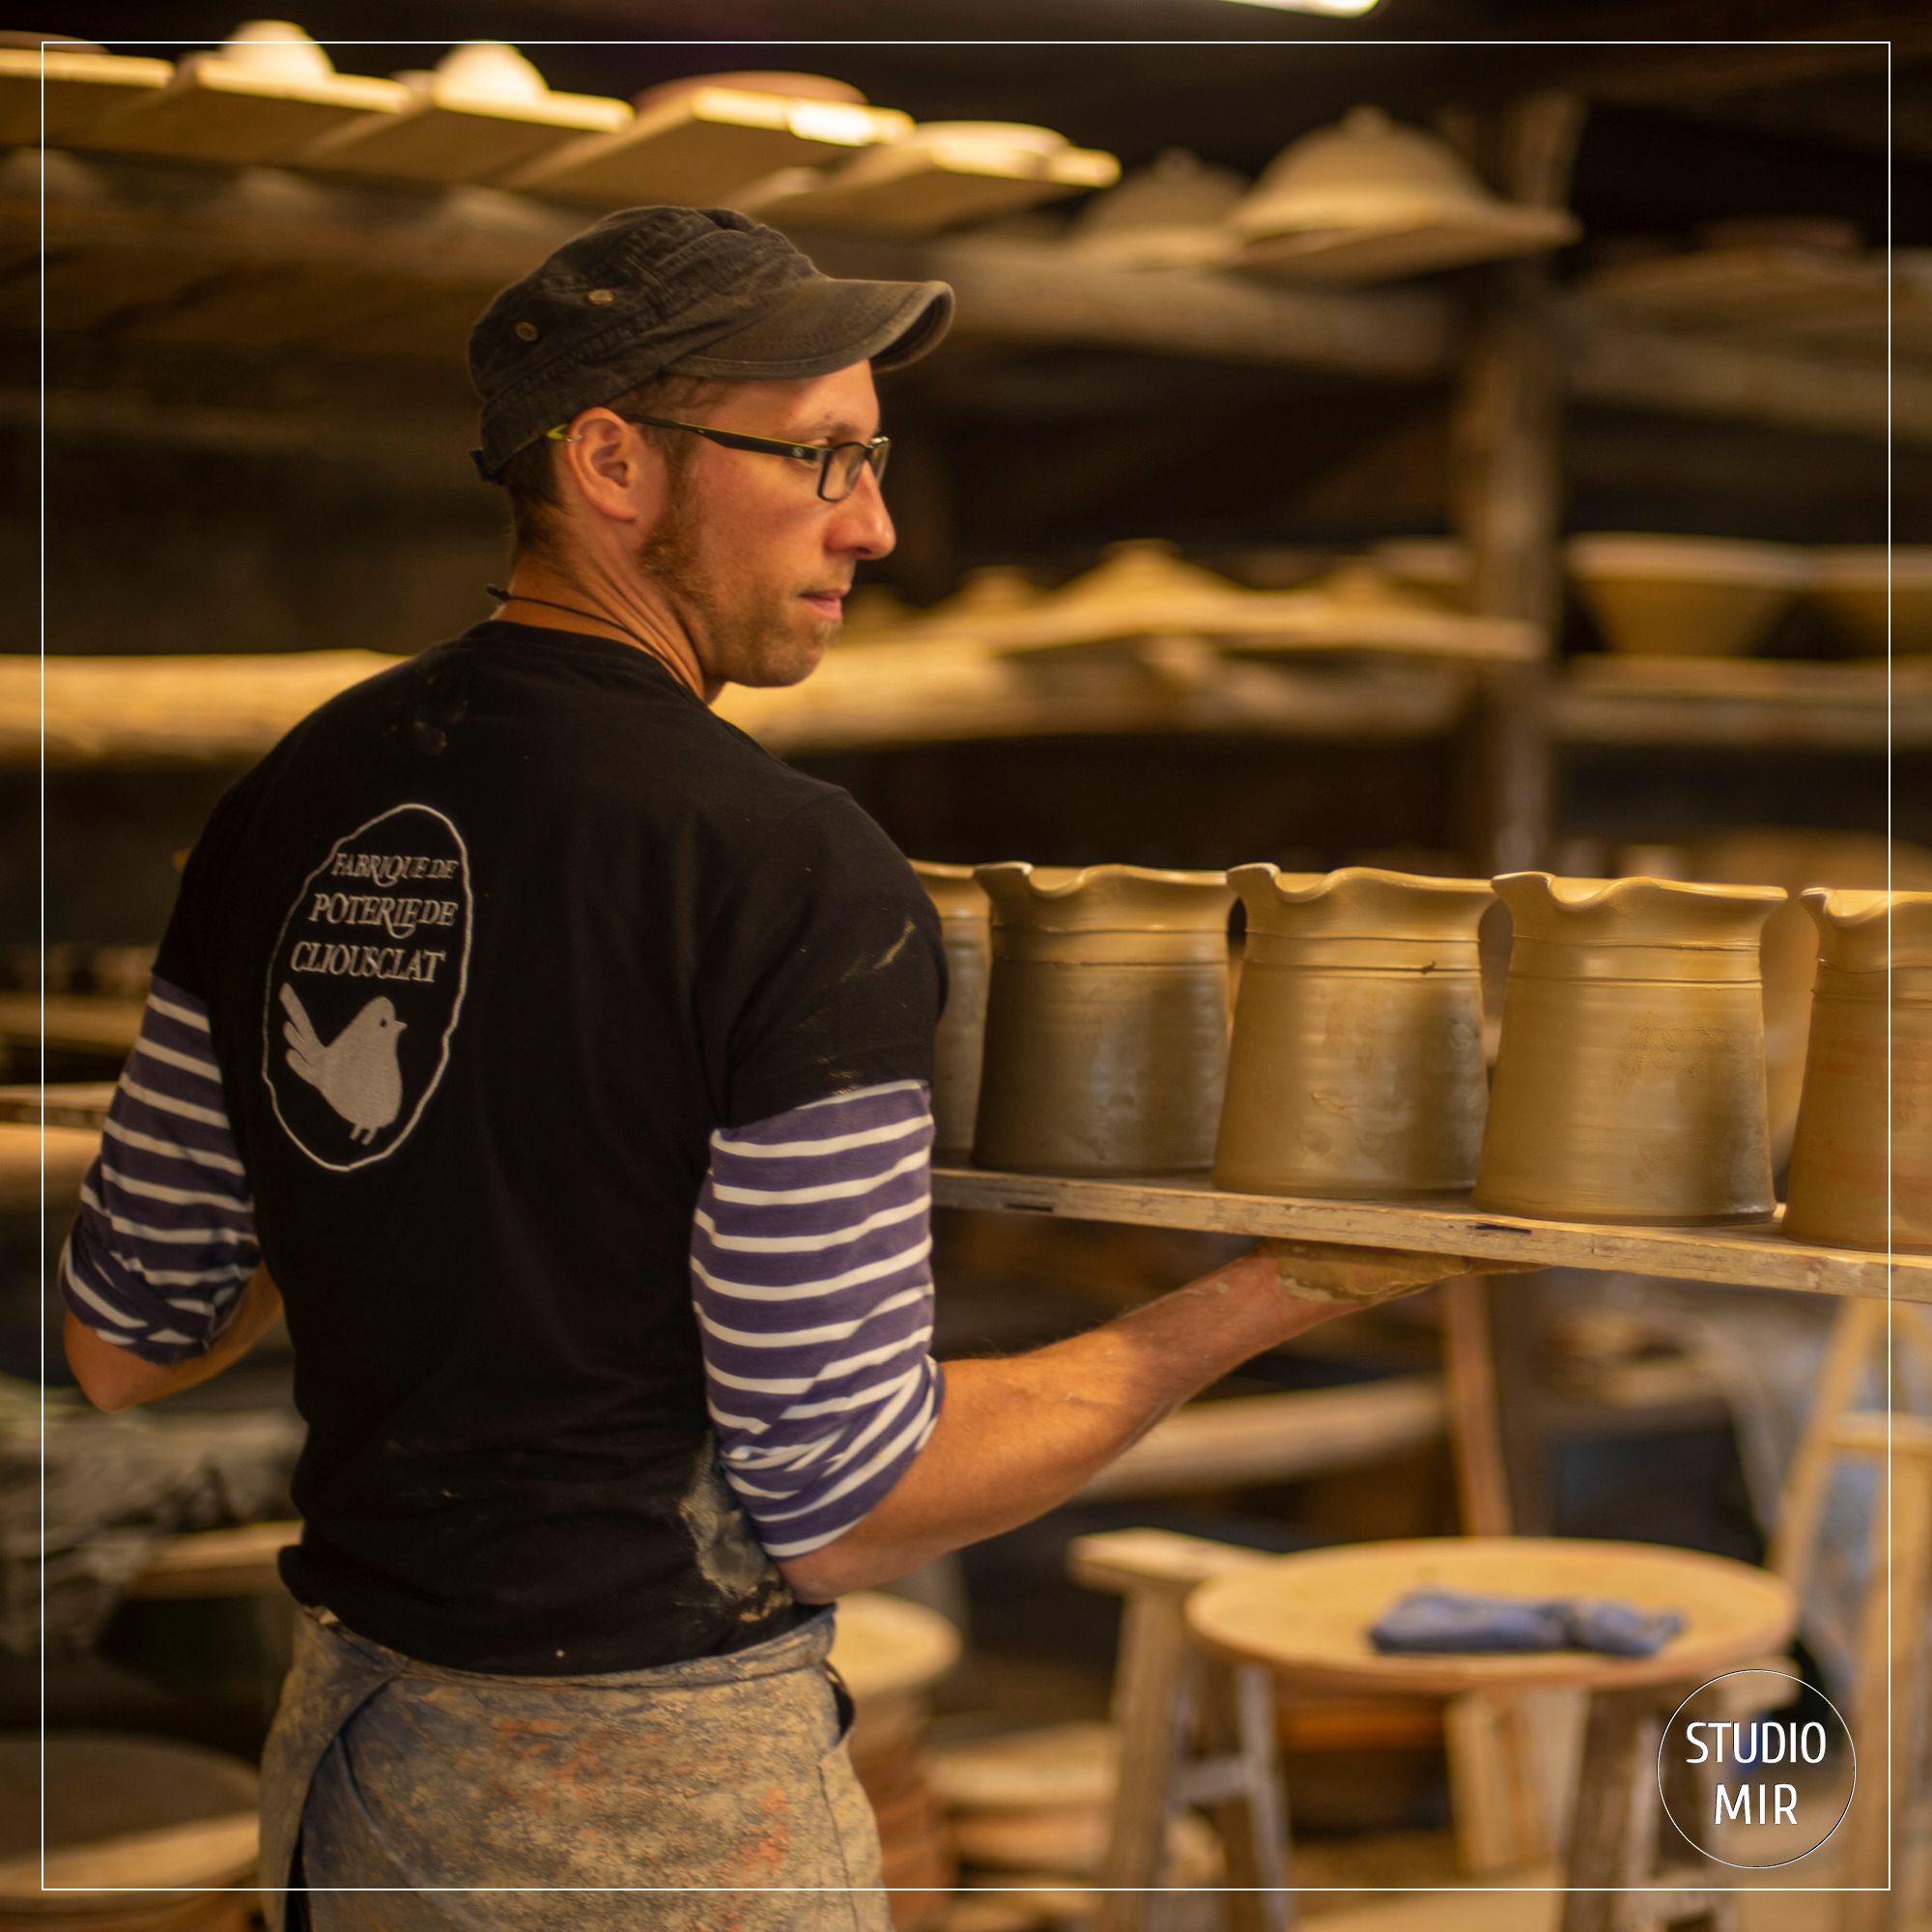 Reportage photo pour mettre en valeur le savoir-faire de l’atelier de poterie de Cliousclat dans la Drôme